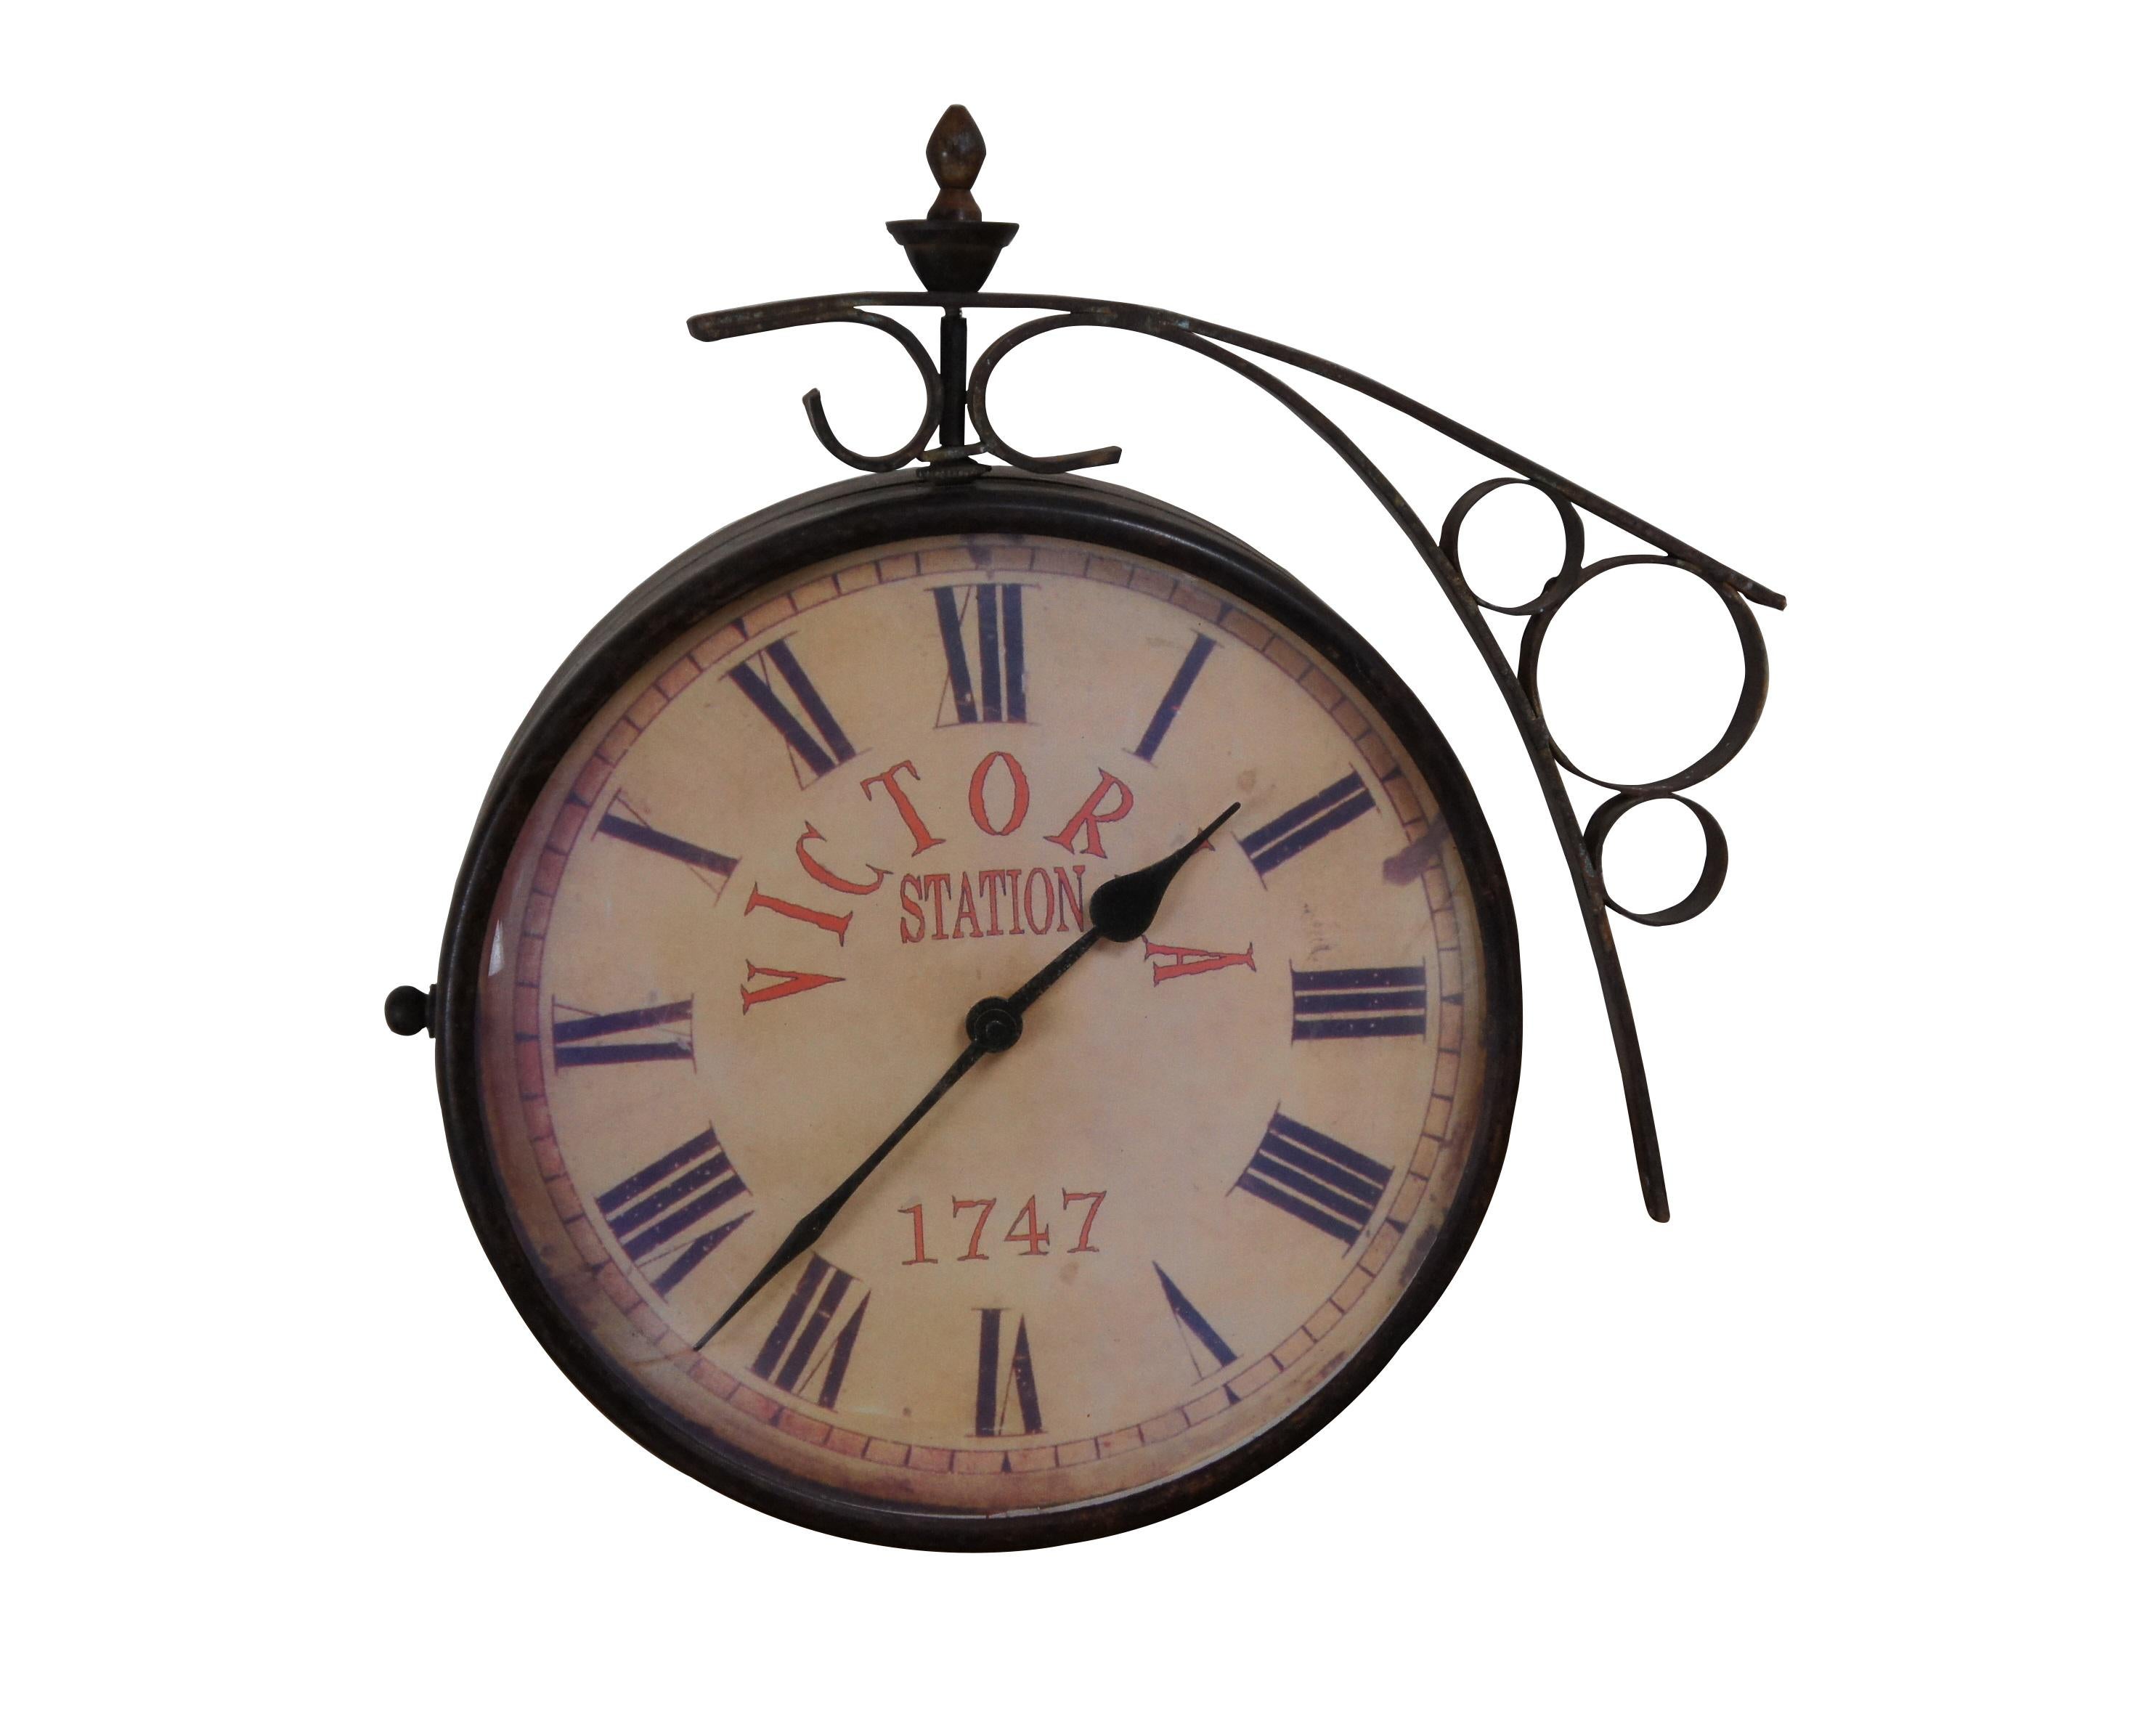 Horloge ferroviaire double face de la fin du XXe siècle, inspirée de la célèbre horloge de la gare de Victoria, à Londres. Support mural et boîtier en métal forgé, finition bronze foncé. Face imprimée de 10 pouces de diamètre, avec faux relief,